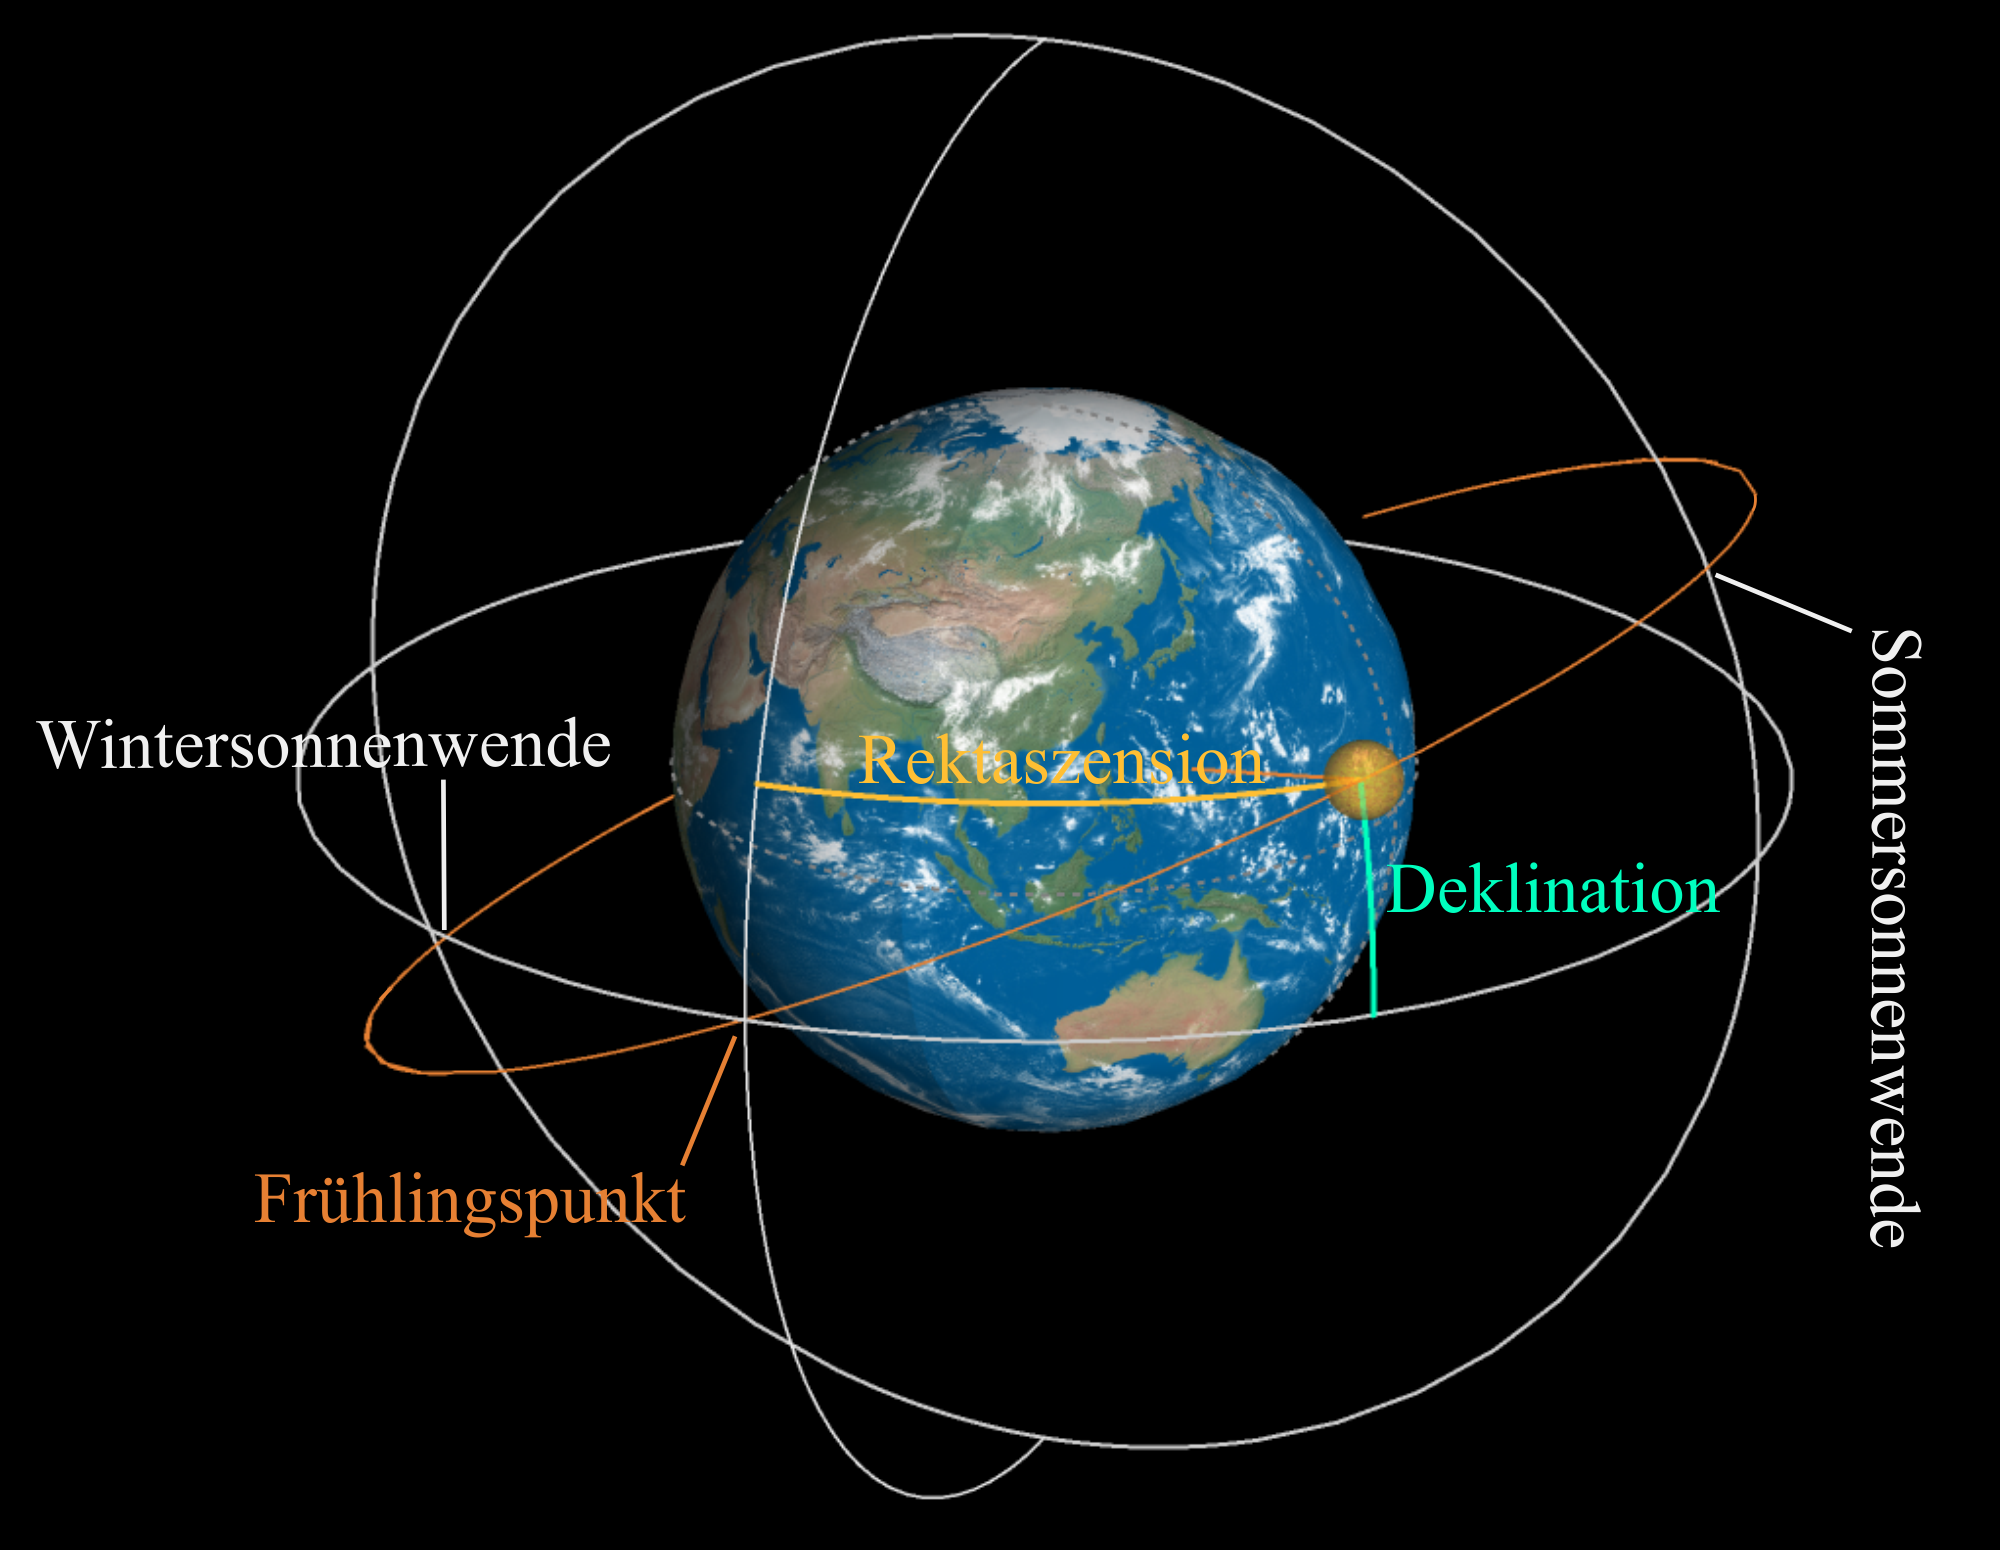 Wichtige Punkte und Winkel im äquatorialen geozentrischen Koordinatensystem. Als wichtige Punkte sind die Sommer- und Wintersonnenwende eingezeichnet. Vom Frühlingspunkt aus werden die Winkel Rektaszension und Deklination bestimmt. Ersterer vom Meridian durch den Frühlingspunkt (eingezeichnet), zweiterer vom Himmelsäquator weg gemessen. Im Bild zu sehen ist die Bahn welche die Sonne innerhalb eines Jahres auf der Himmelssphäre zurücklegt (Ekliptik)